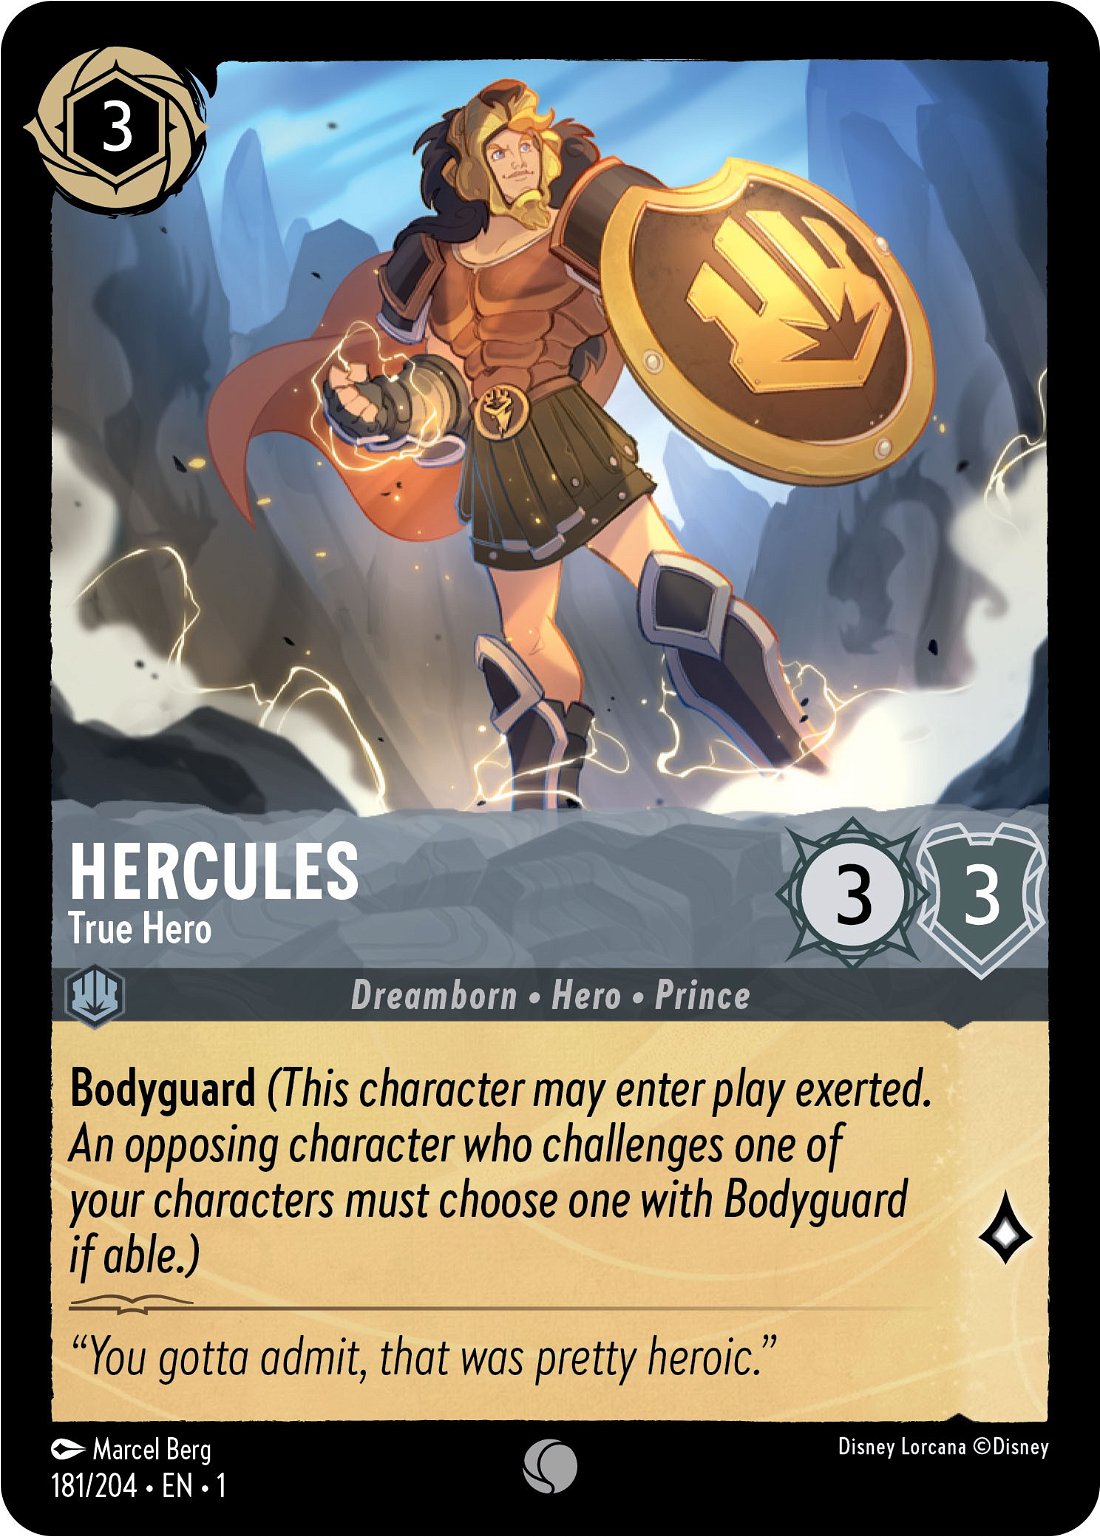 Hercules - True Hero Crop image Wallpaper